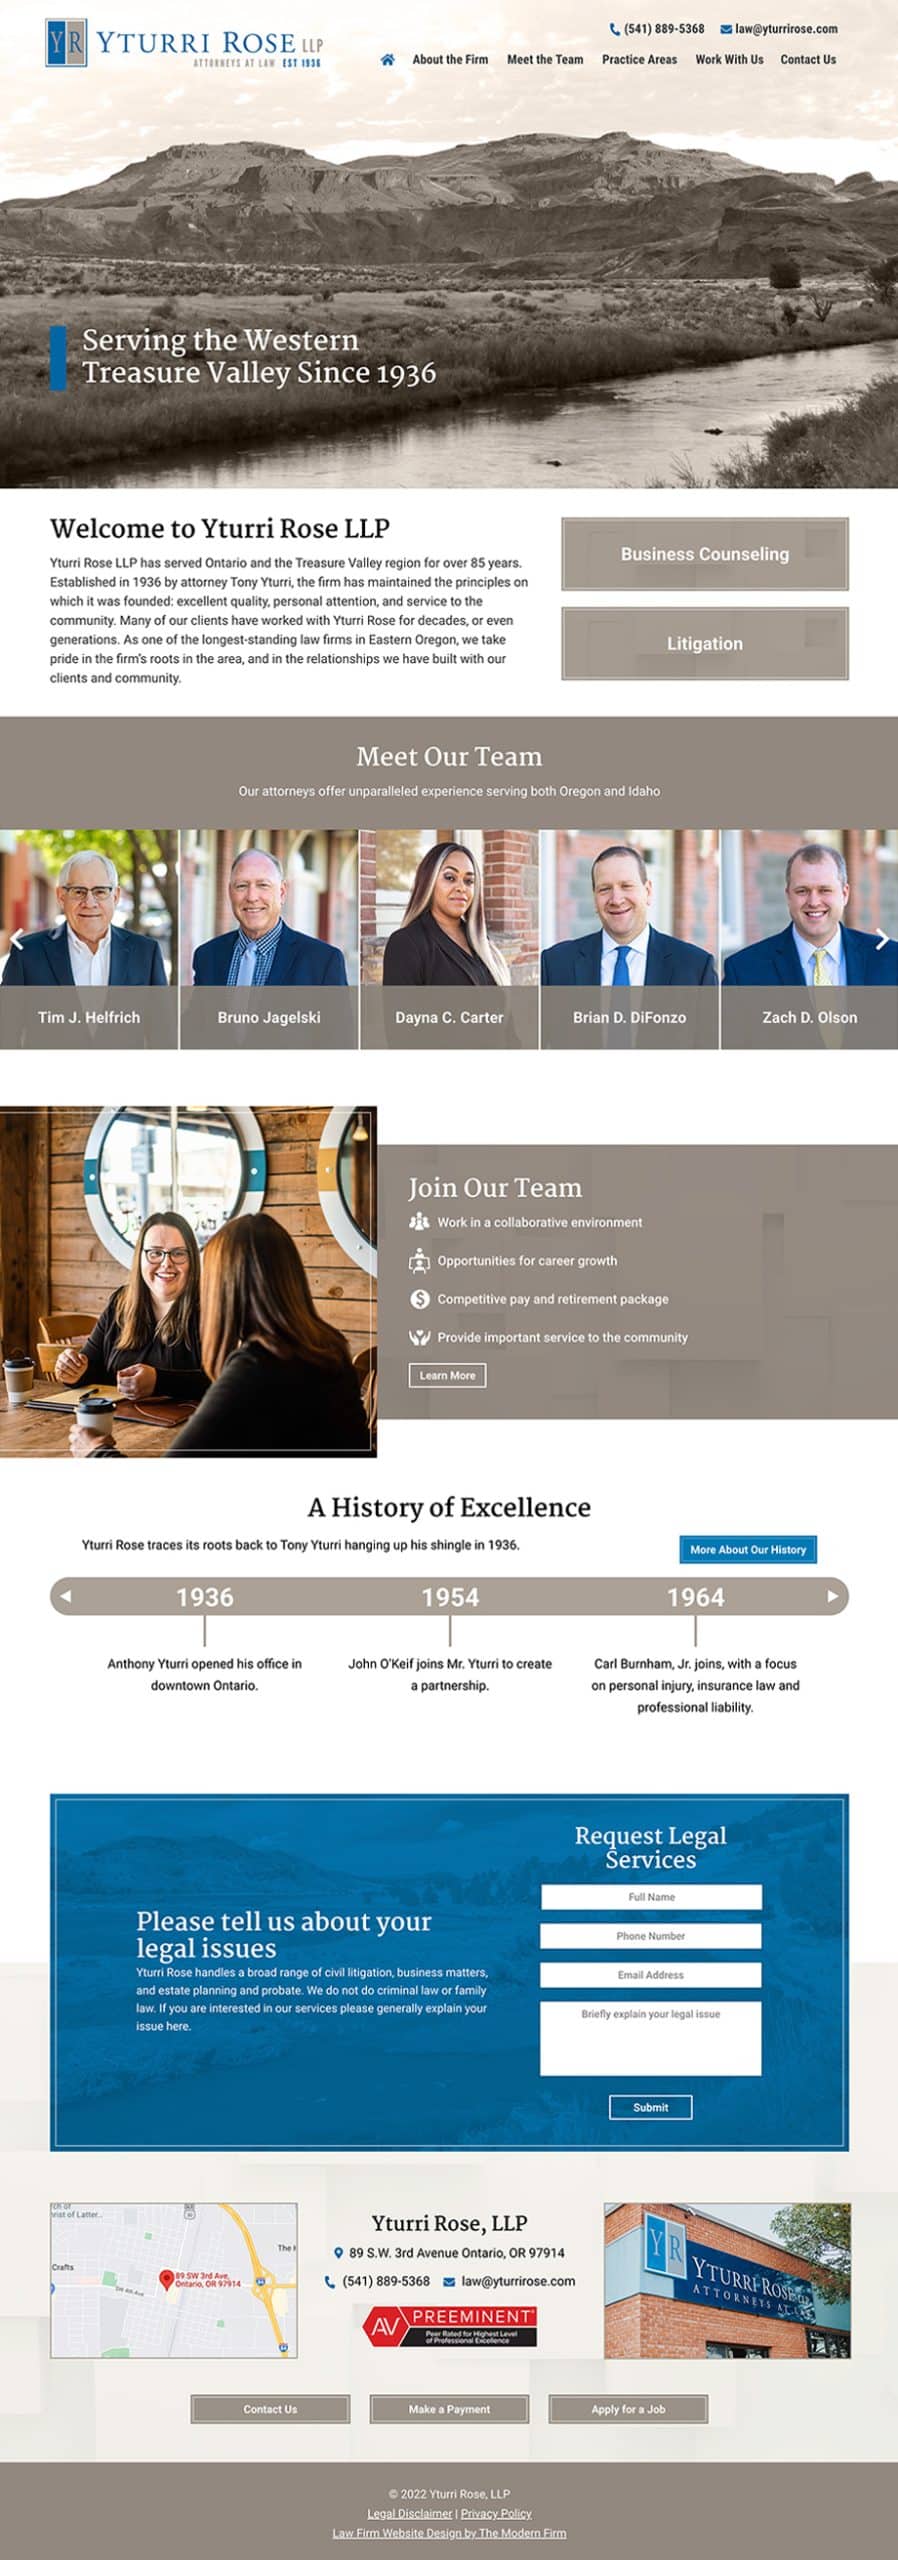 Law Firm Website Design for Yturri Rose, LLP